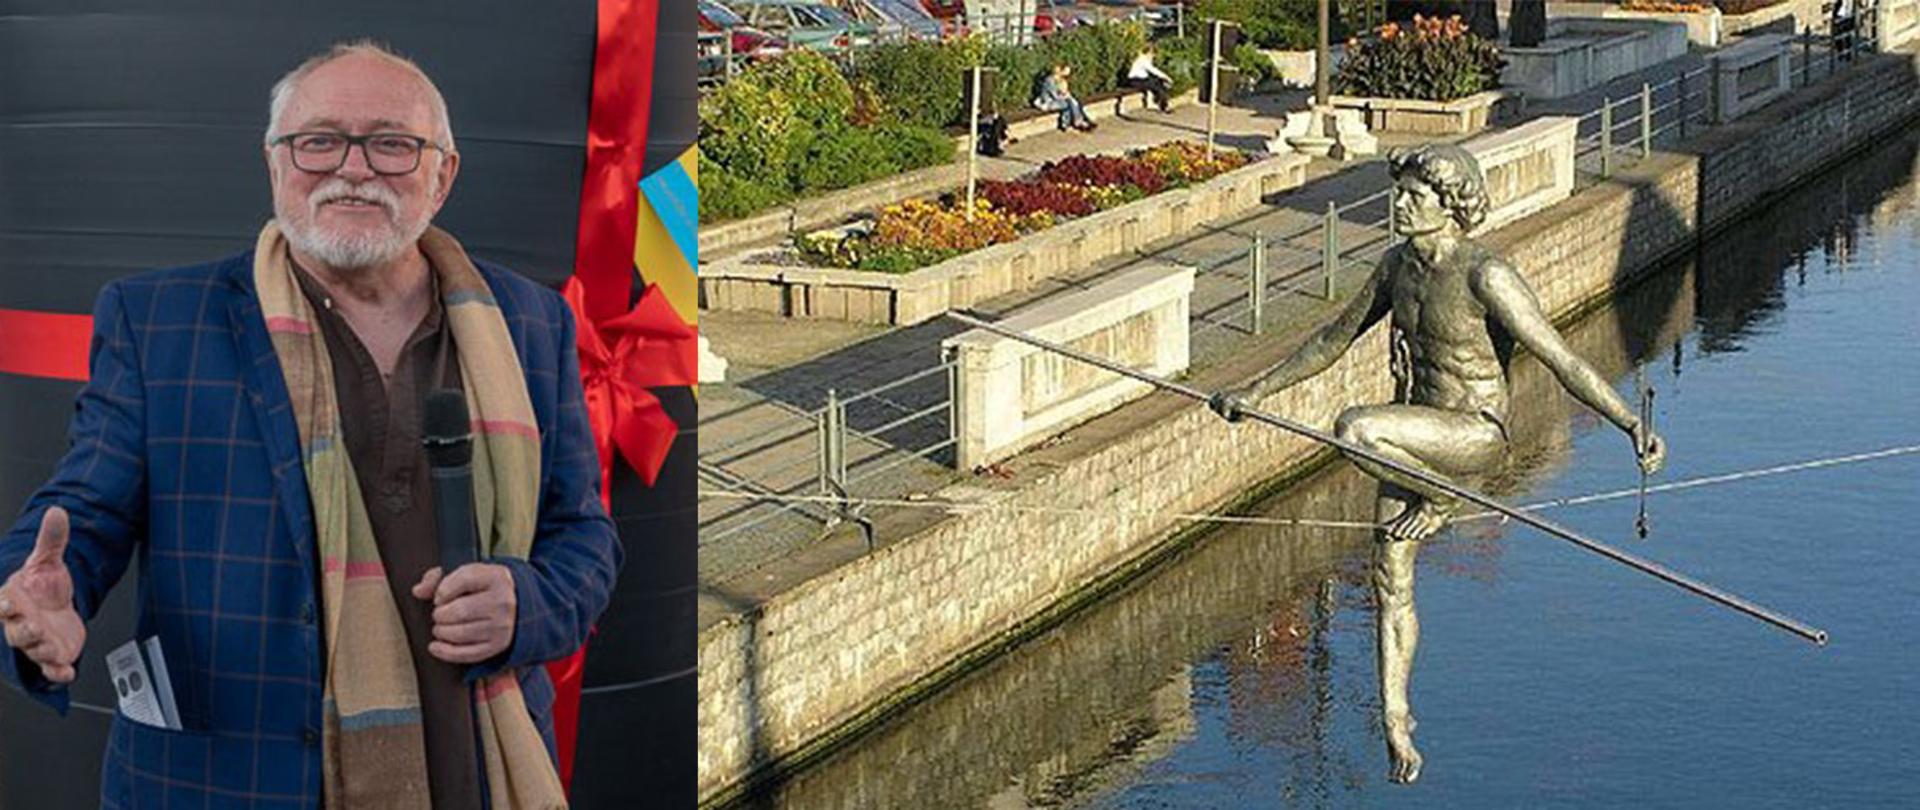 Zdjęcie przedstawia z lewej strony Jerzego Kędziorę na czarnym tle, z prawej strony rzeźbę "Przechodzący przez rzekę" nad Brdą w Bydgoszczy, postać balansująca na linie nad płynącą rzeką 